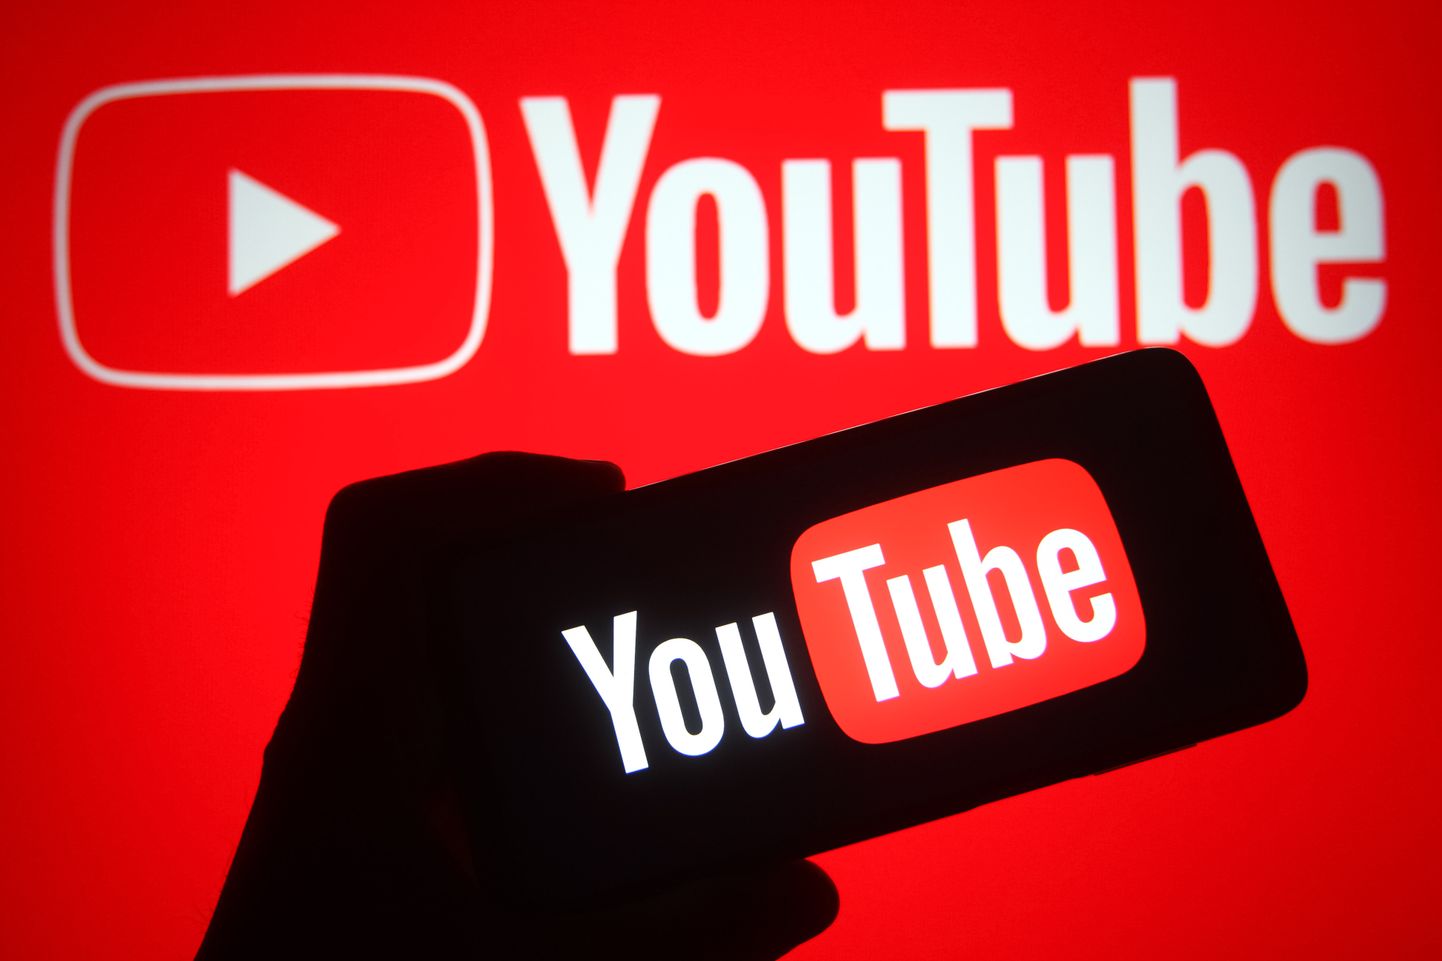 YouTube'i eeskirjade muutumise tõttu on kahjulike videote jagamiste langusele vastukaaluks suurenenud peavoolumeediakanalite videote jagamine.